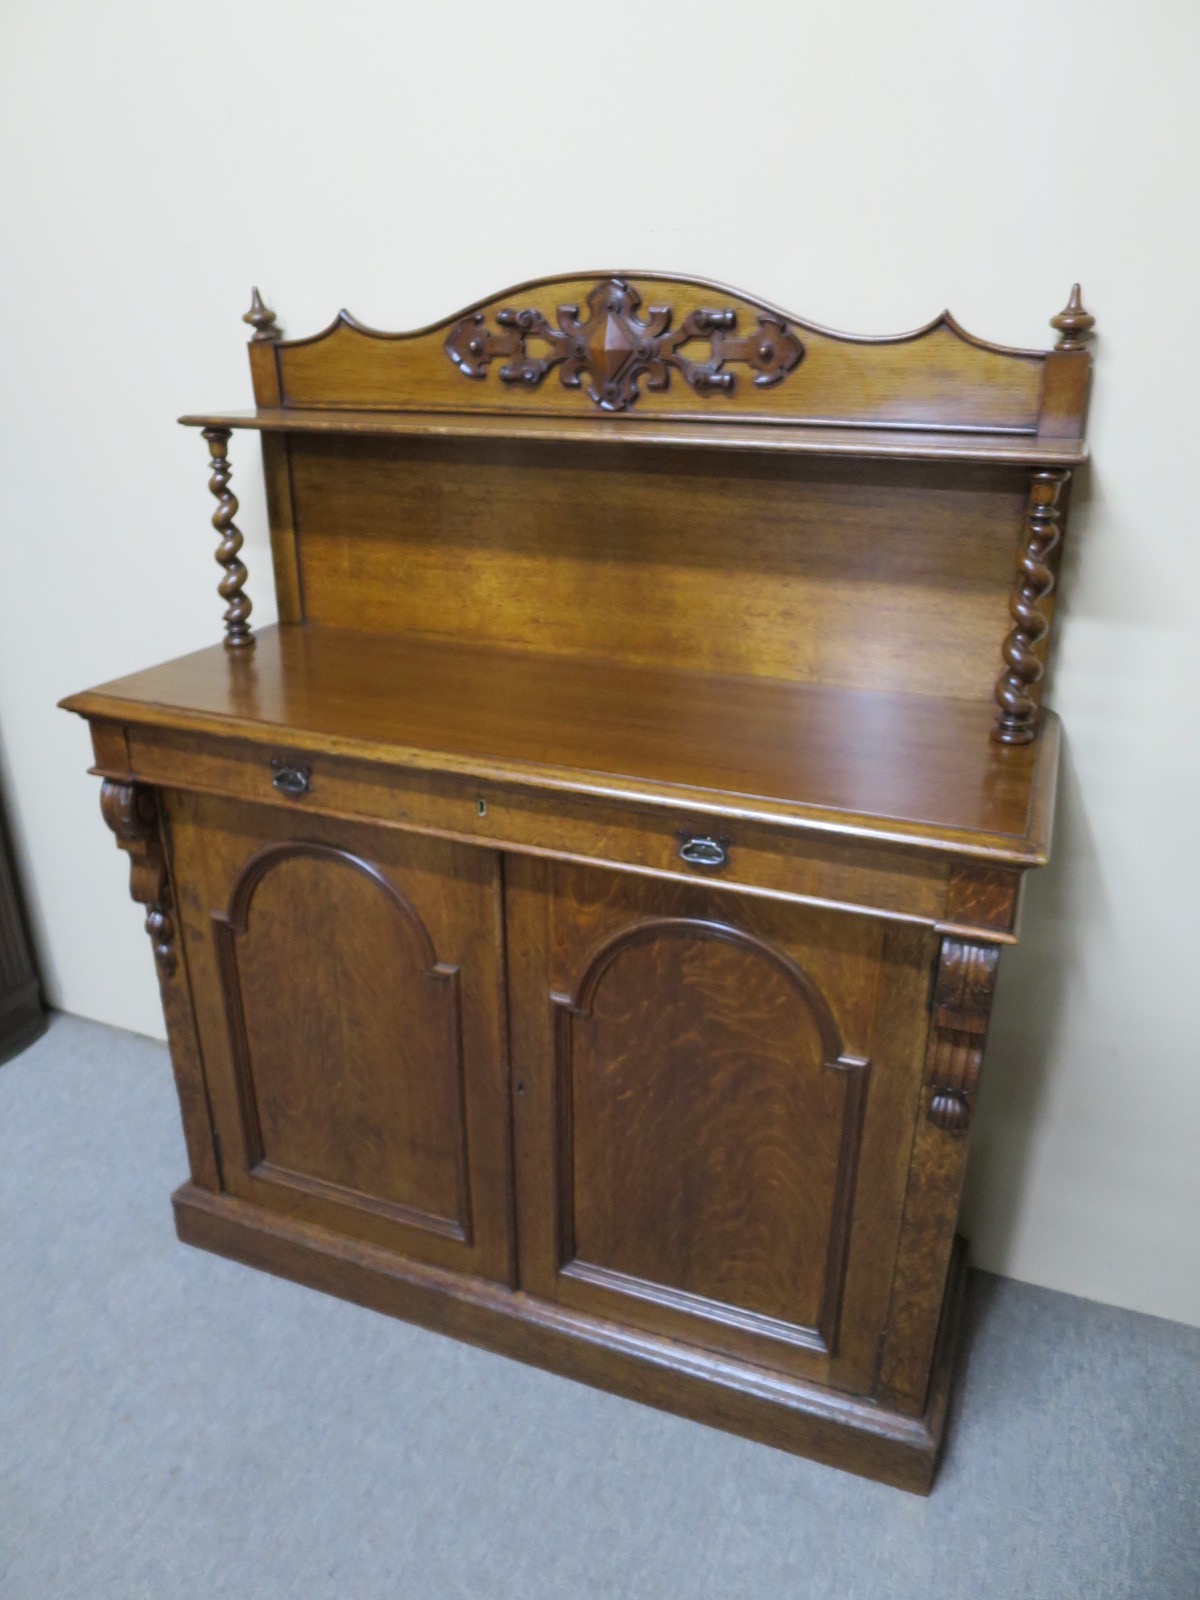 Buy Online 19th Century Oak Chiffonier - Australian Antique Shop ...